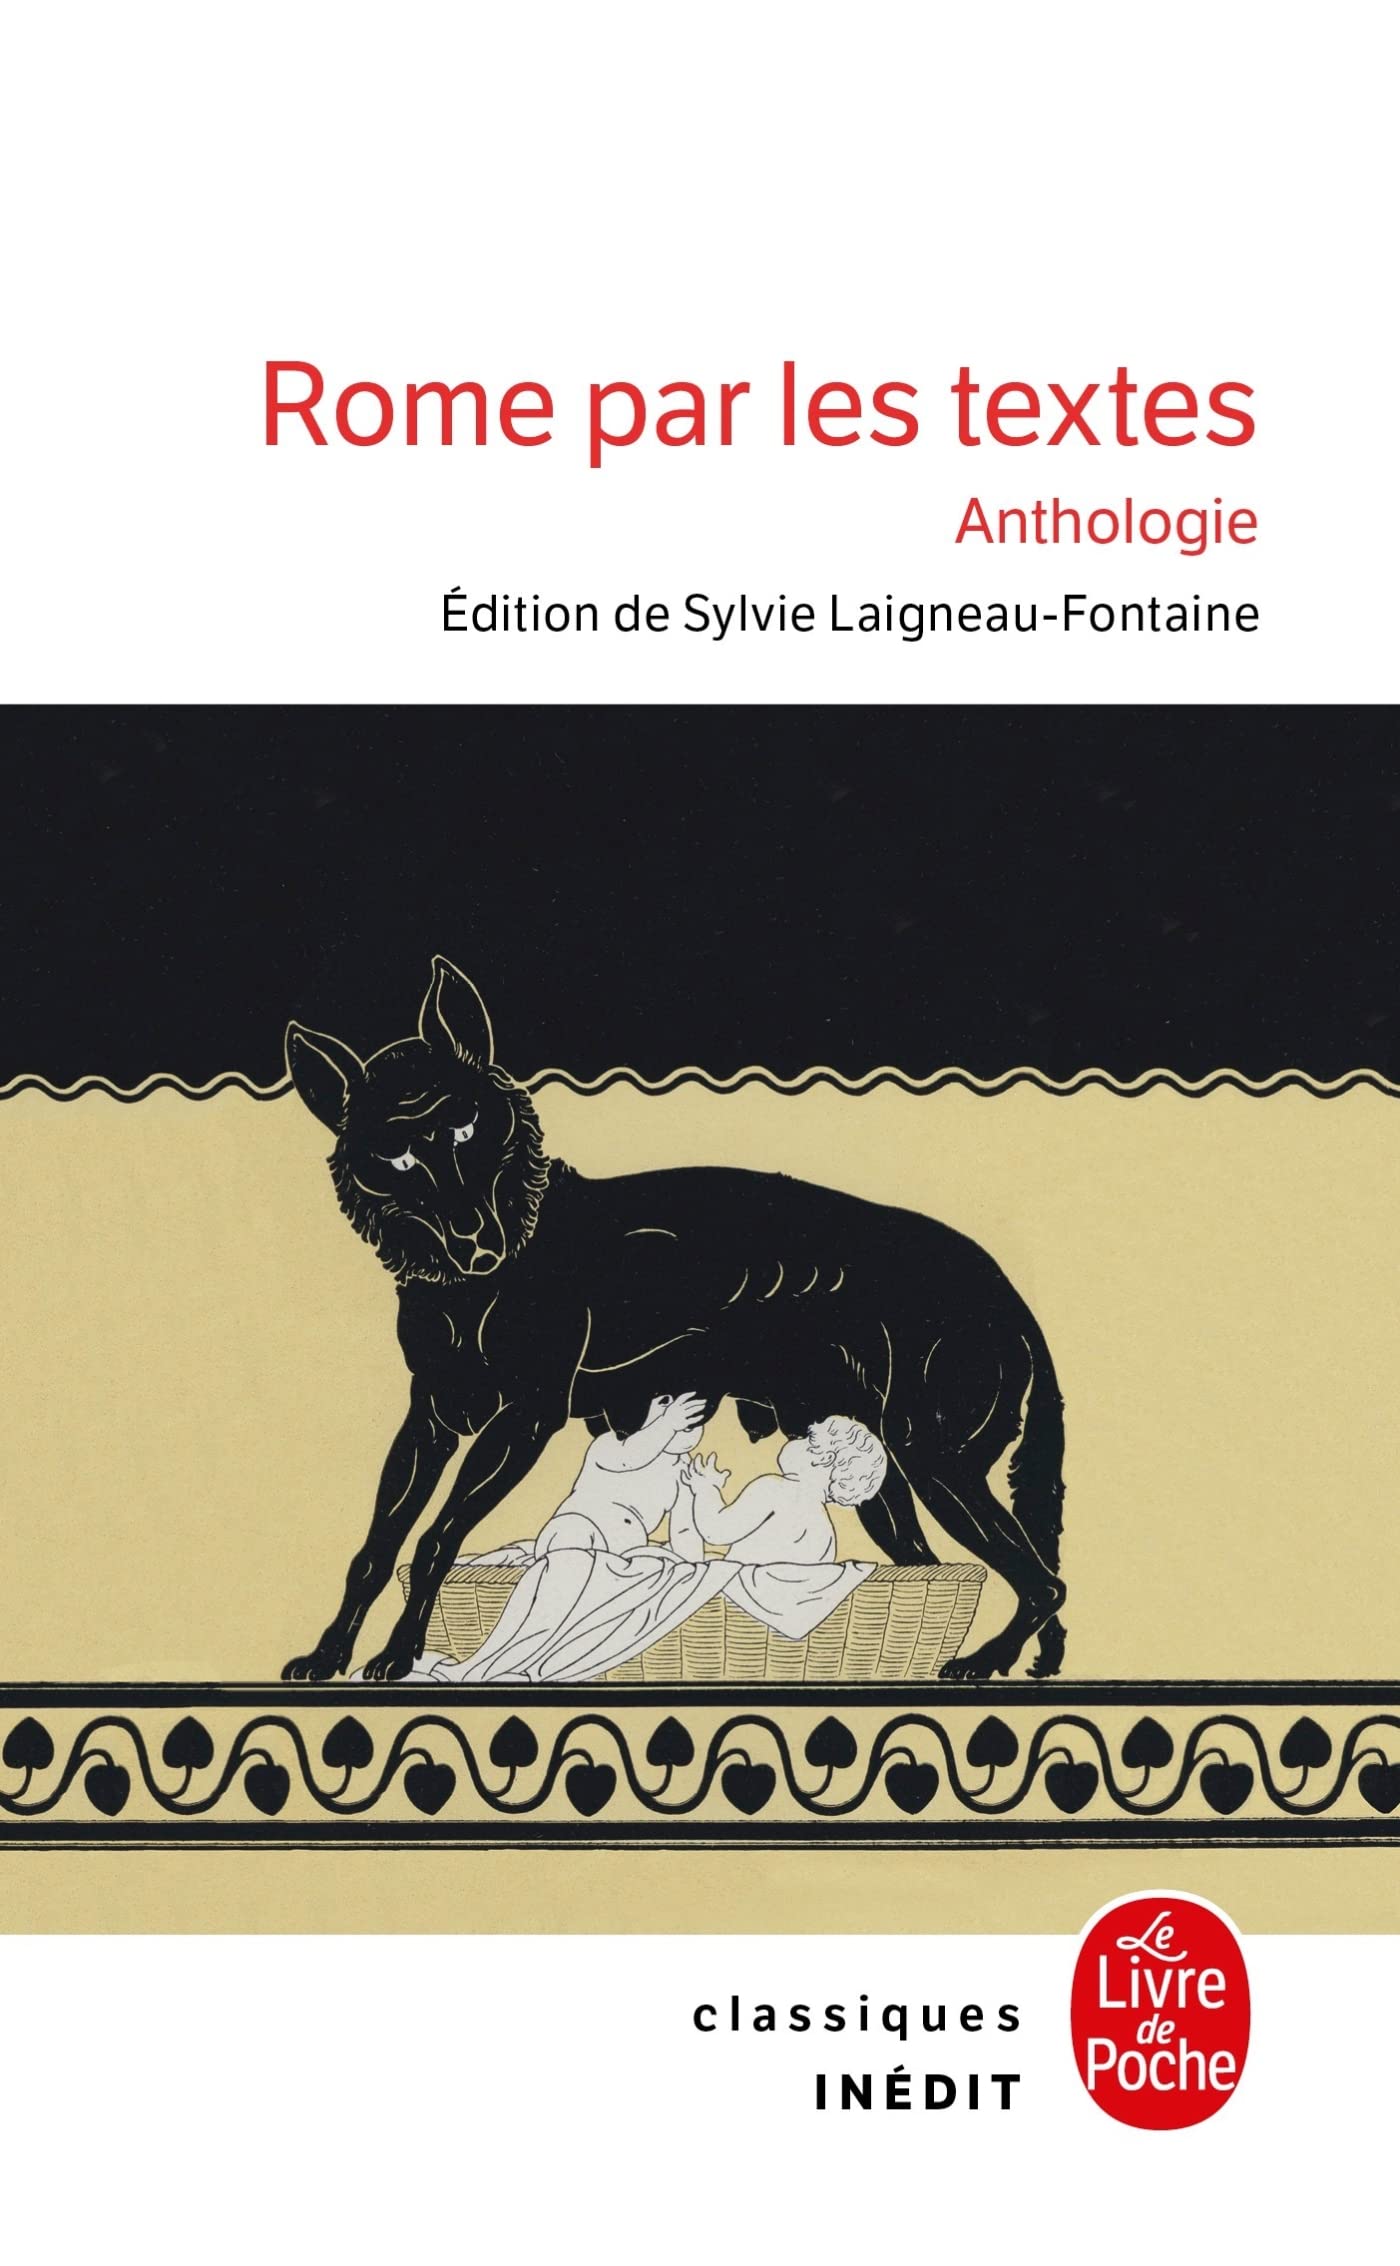 Rome par les textes. Anthologie, 2023, 416 p.